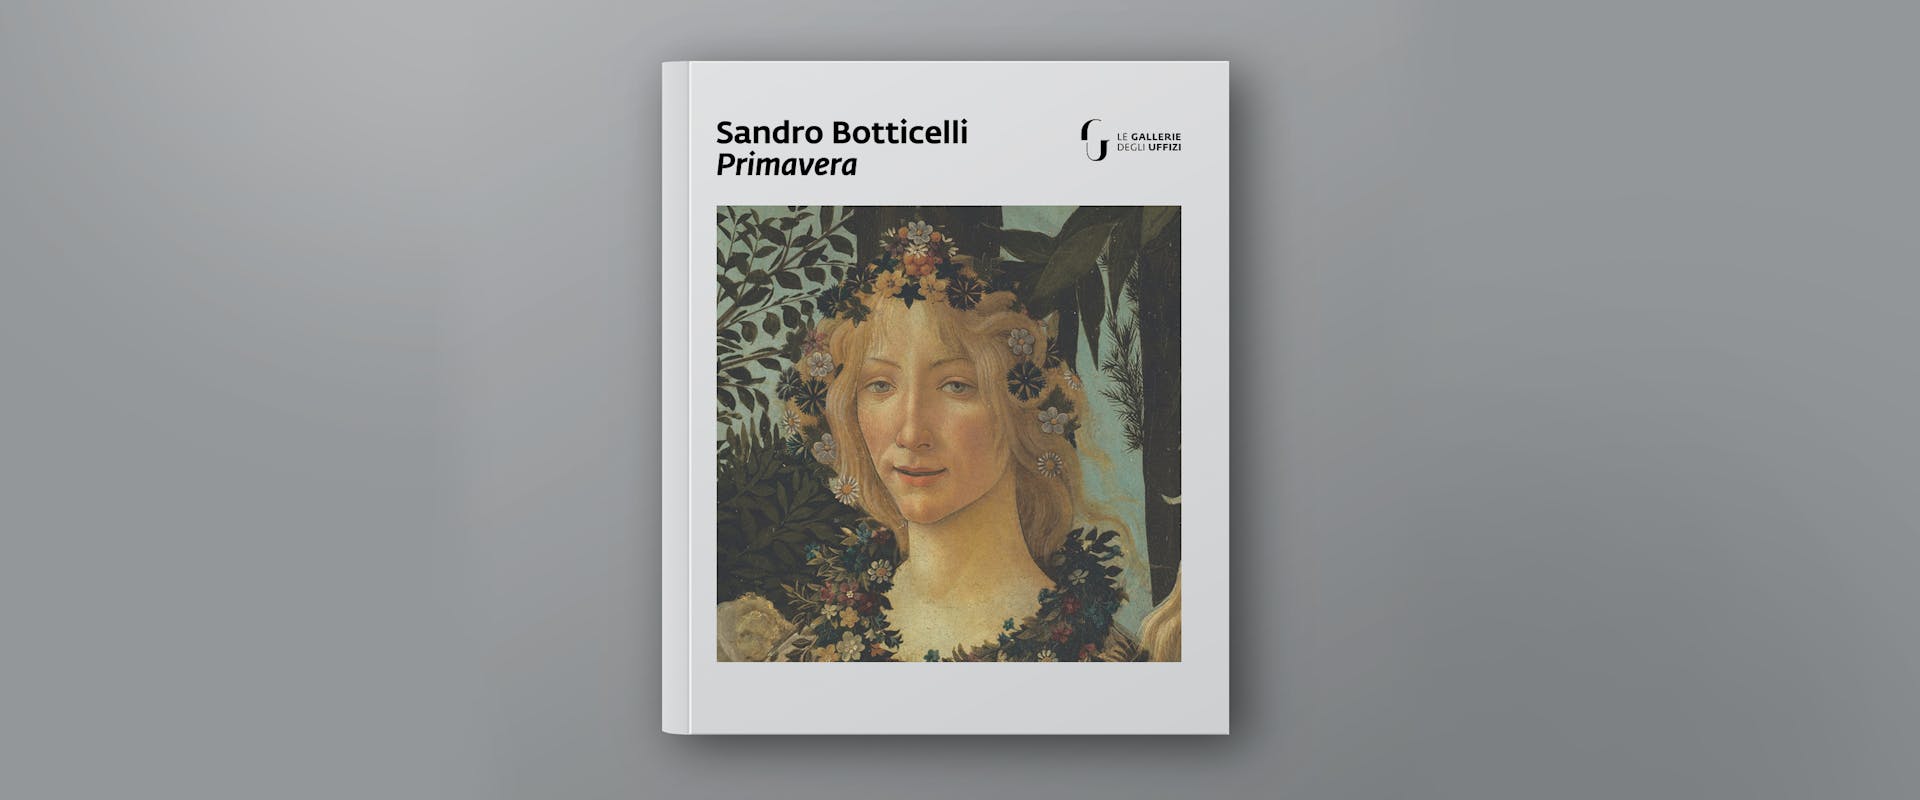 Sandro Botticelli, Primavera | Tactile Book